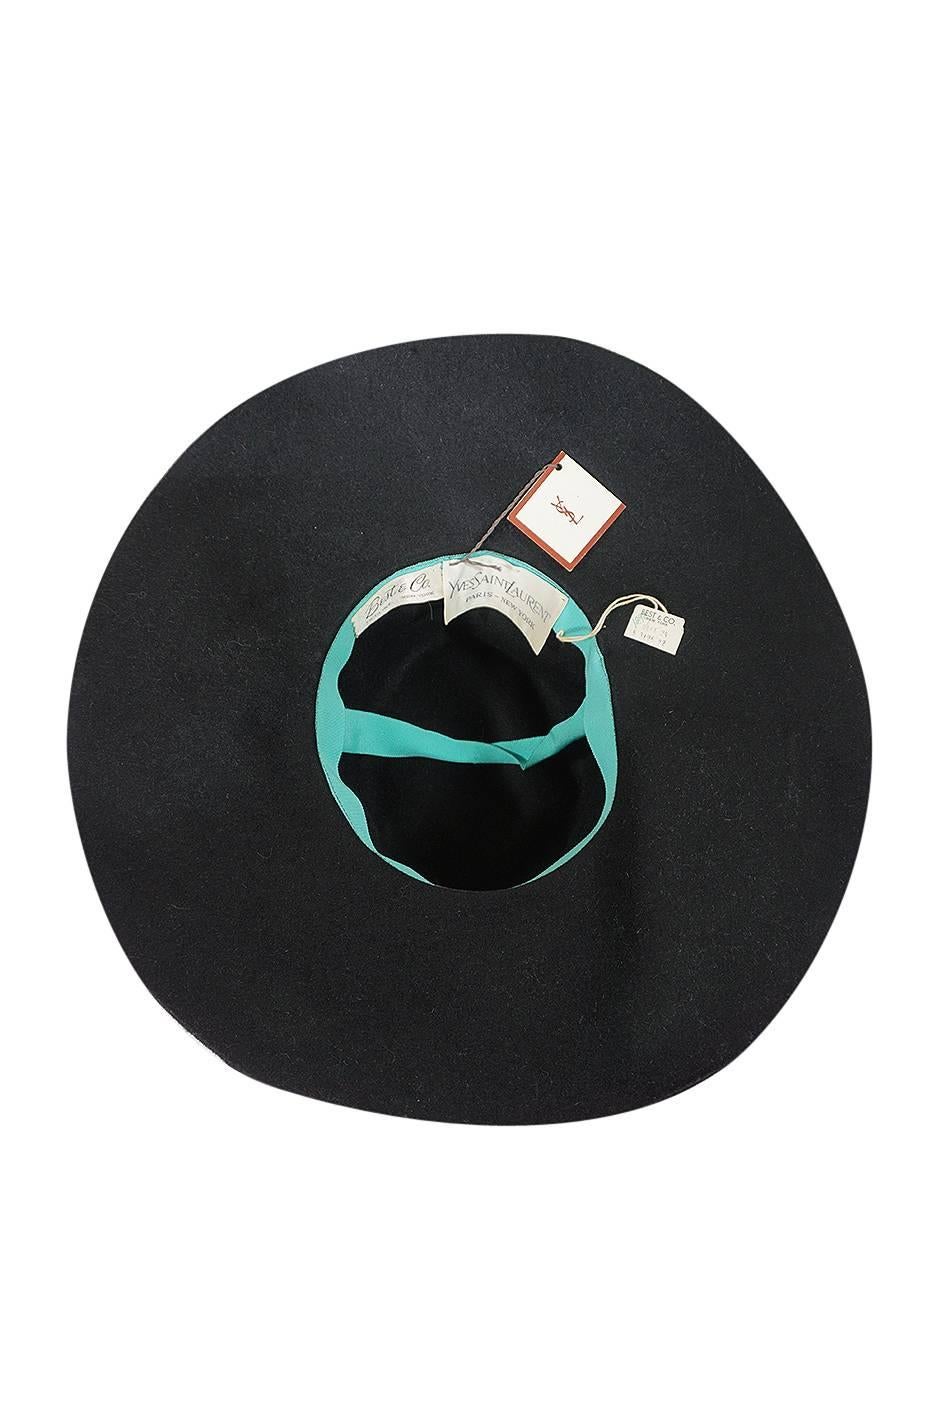 Iconic 1970s Yves Saint Laurent Wide Brim Hat 1